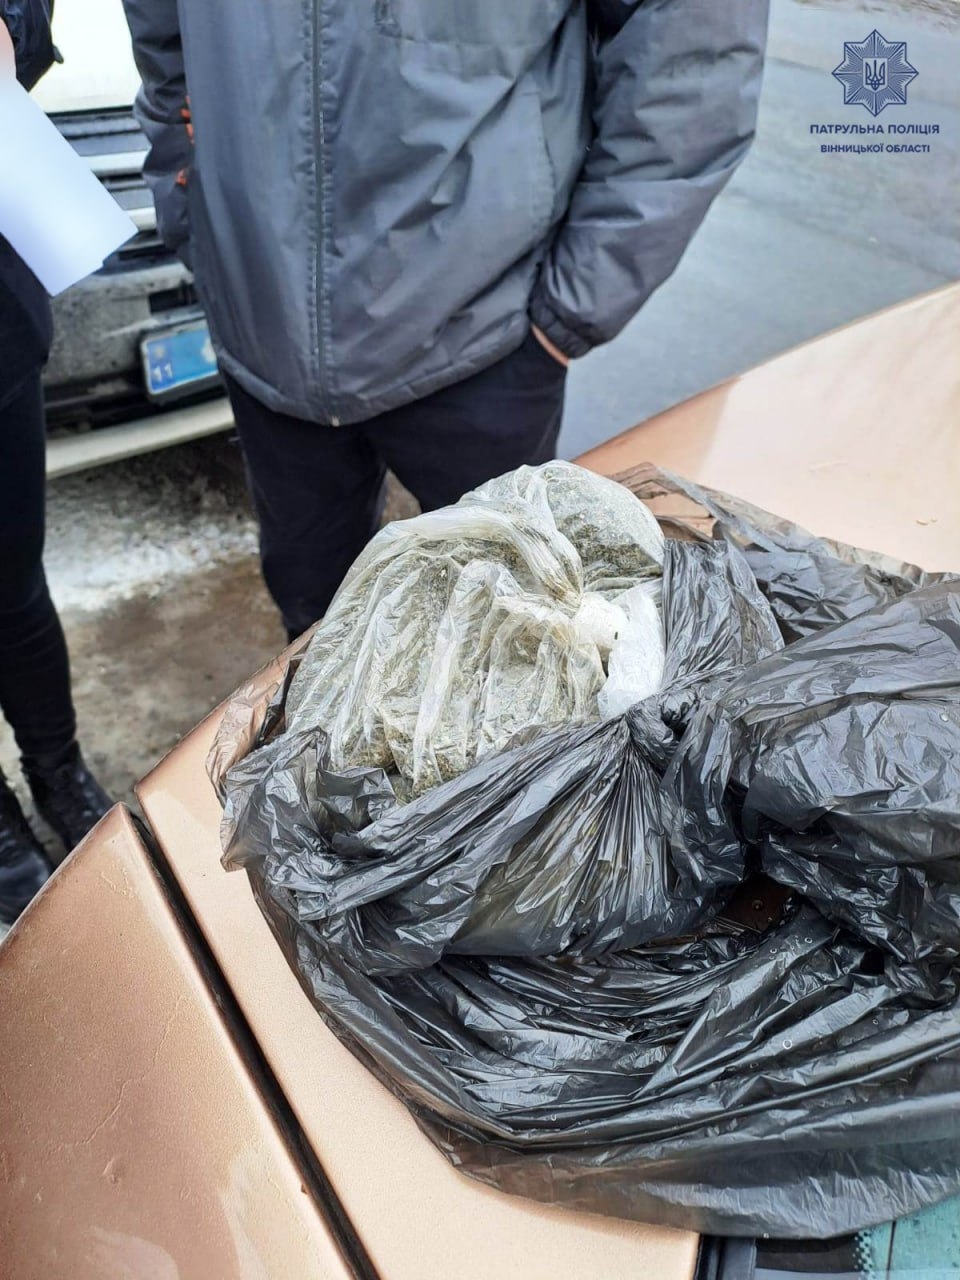 У Вінниці поліцейські зупинили Skoda - в пасажира знайшли наркотики